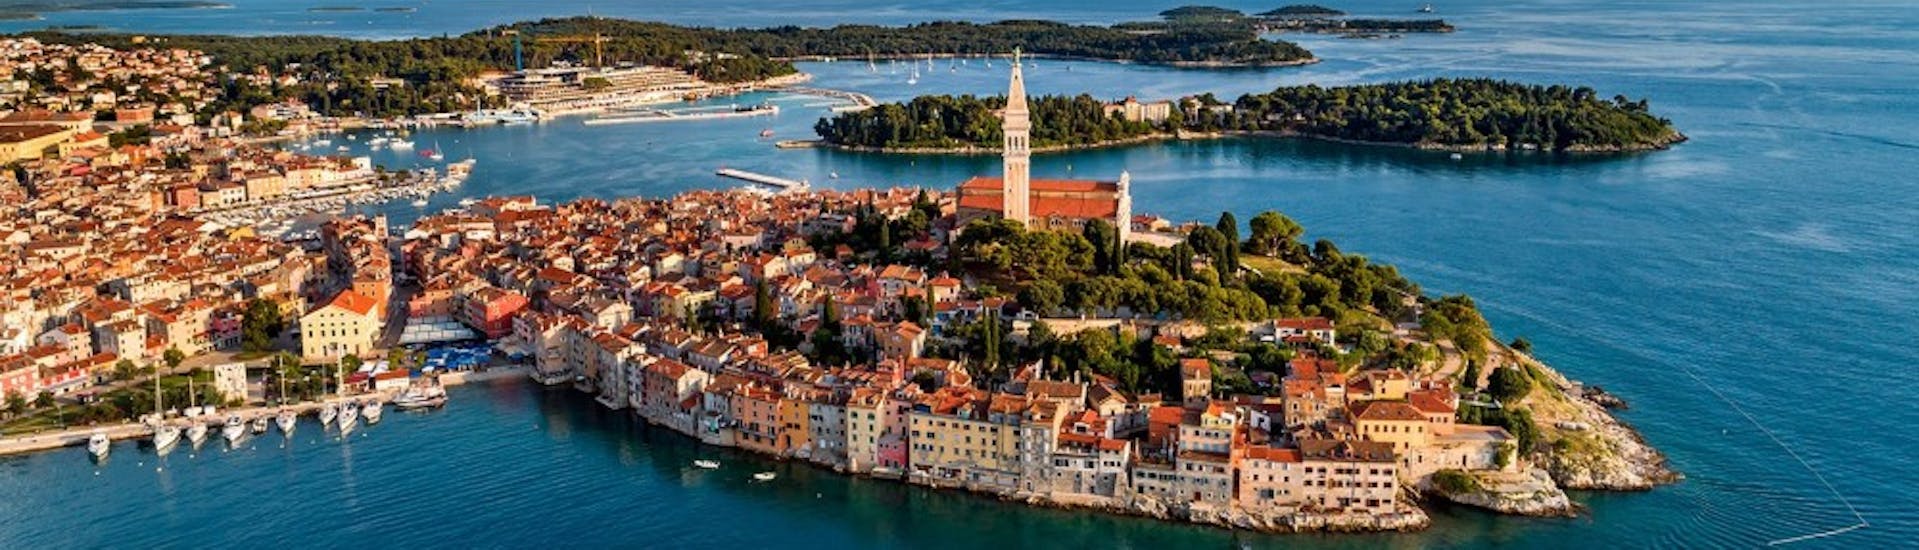 Uitzicht op de historische stad Rovinj, die je gaat bezoeken tijdens de privé boottocht naar Rovinj vanuit Fažana met Sea Tours Istria Fažana.